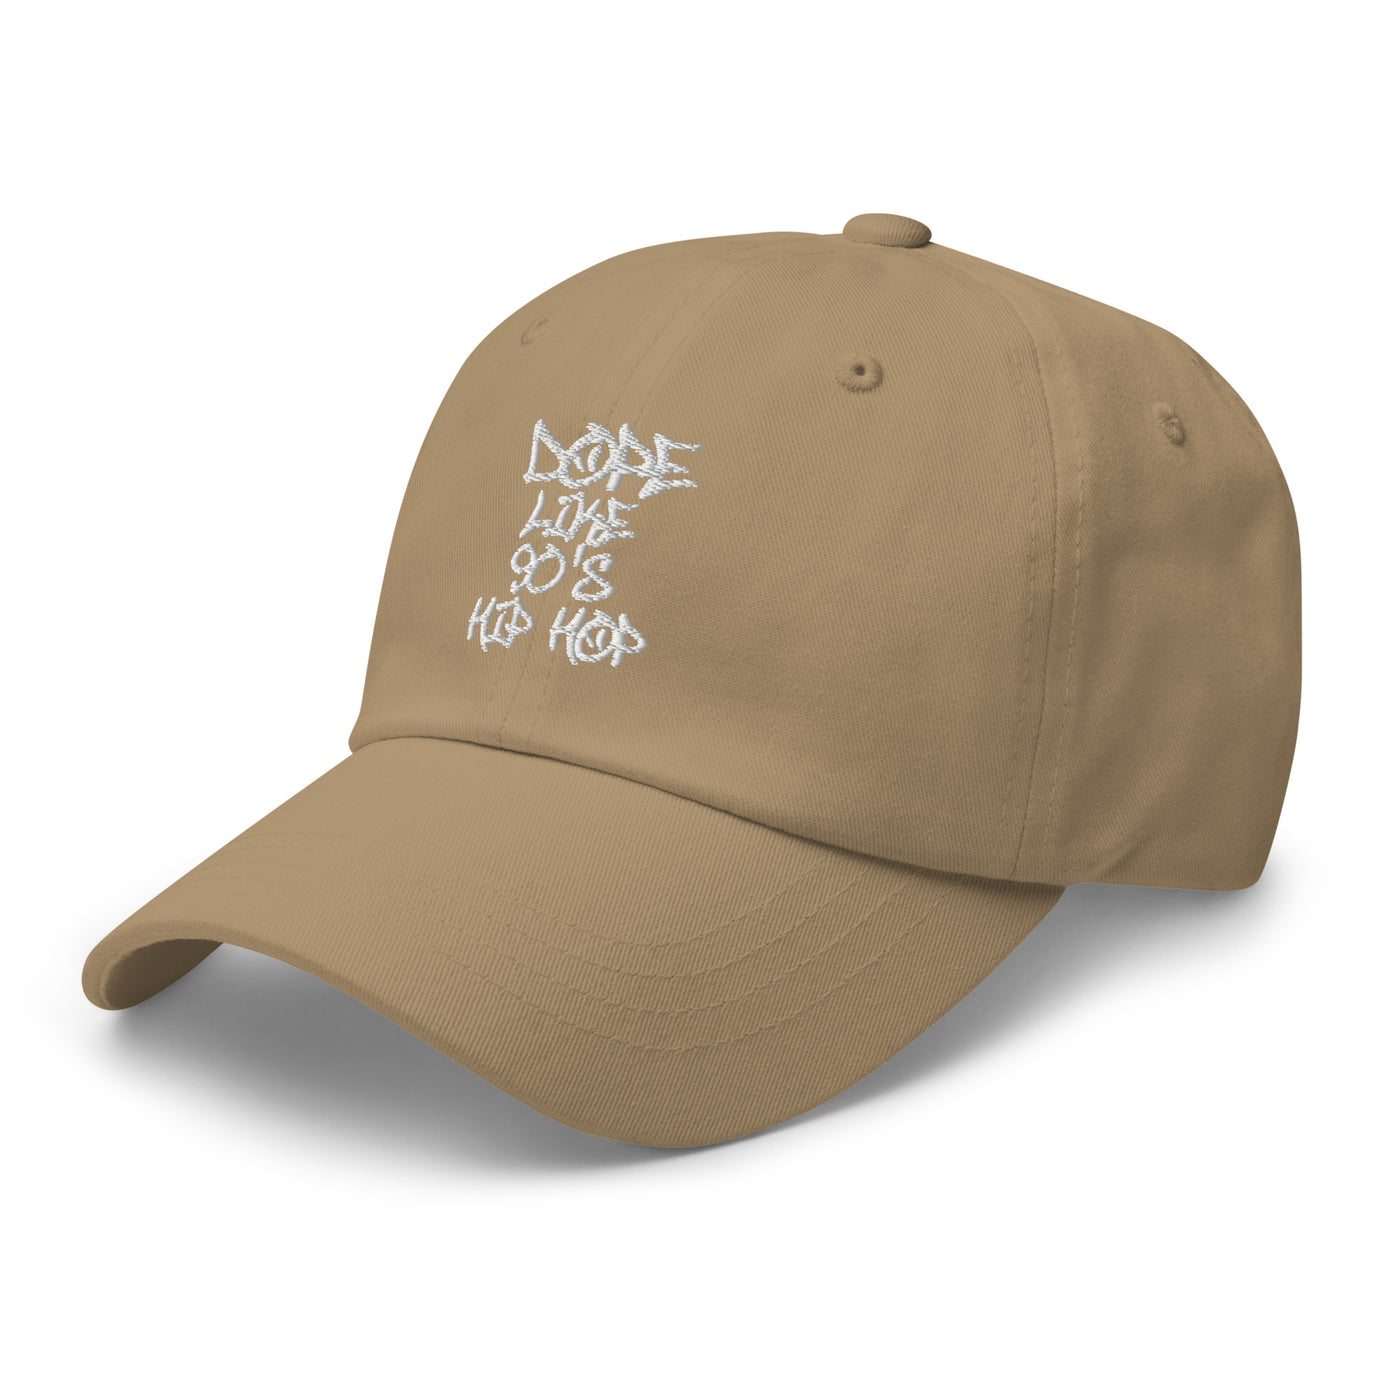 DOPE LIKE 90'S HIP HOP unisex hat